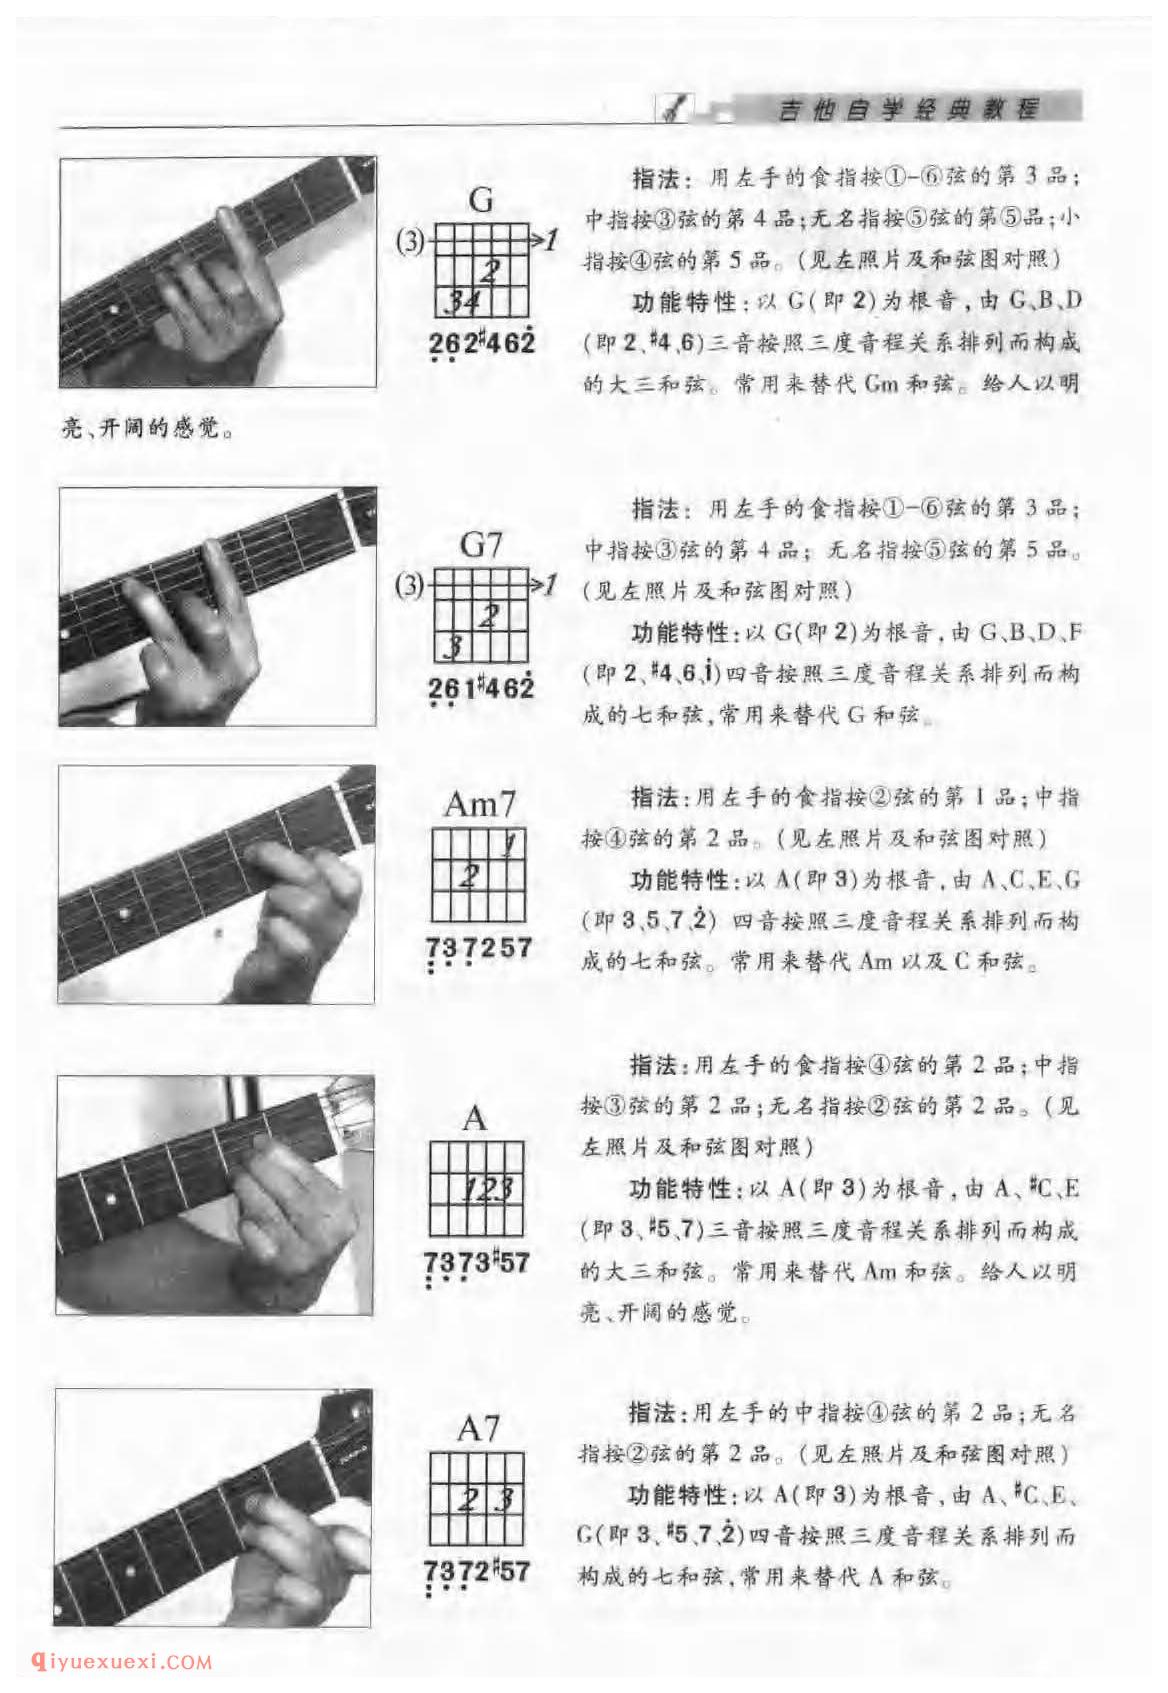 吉他F大调与#d小调的音阶及指板音位图_F大调与d小调的和弦指法与练习